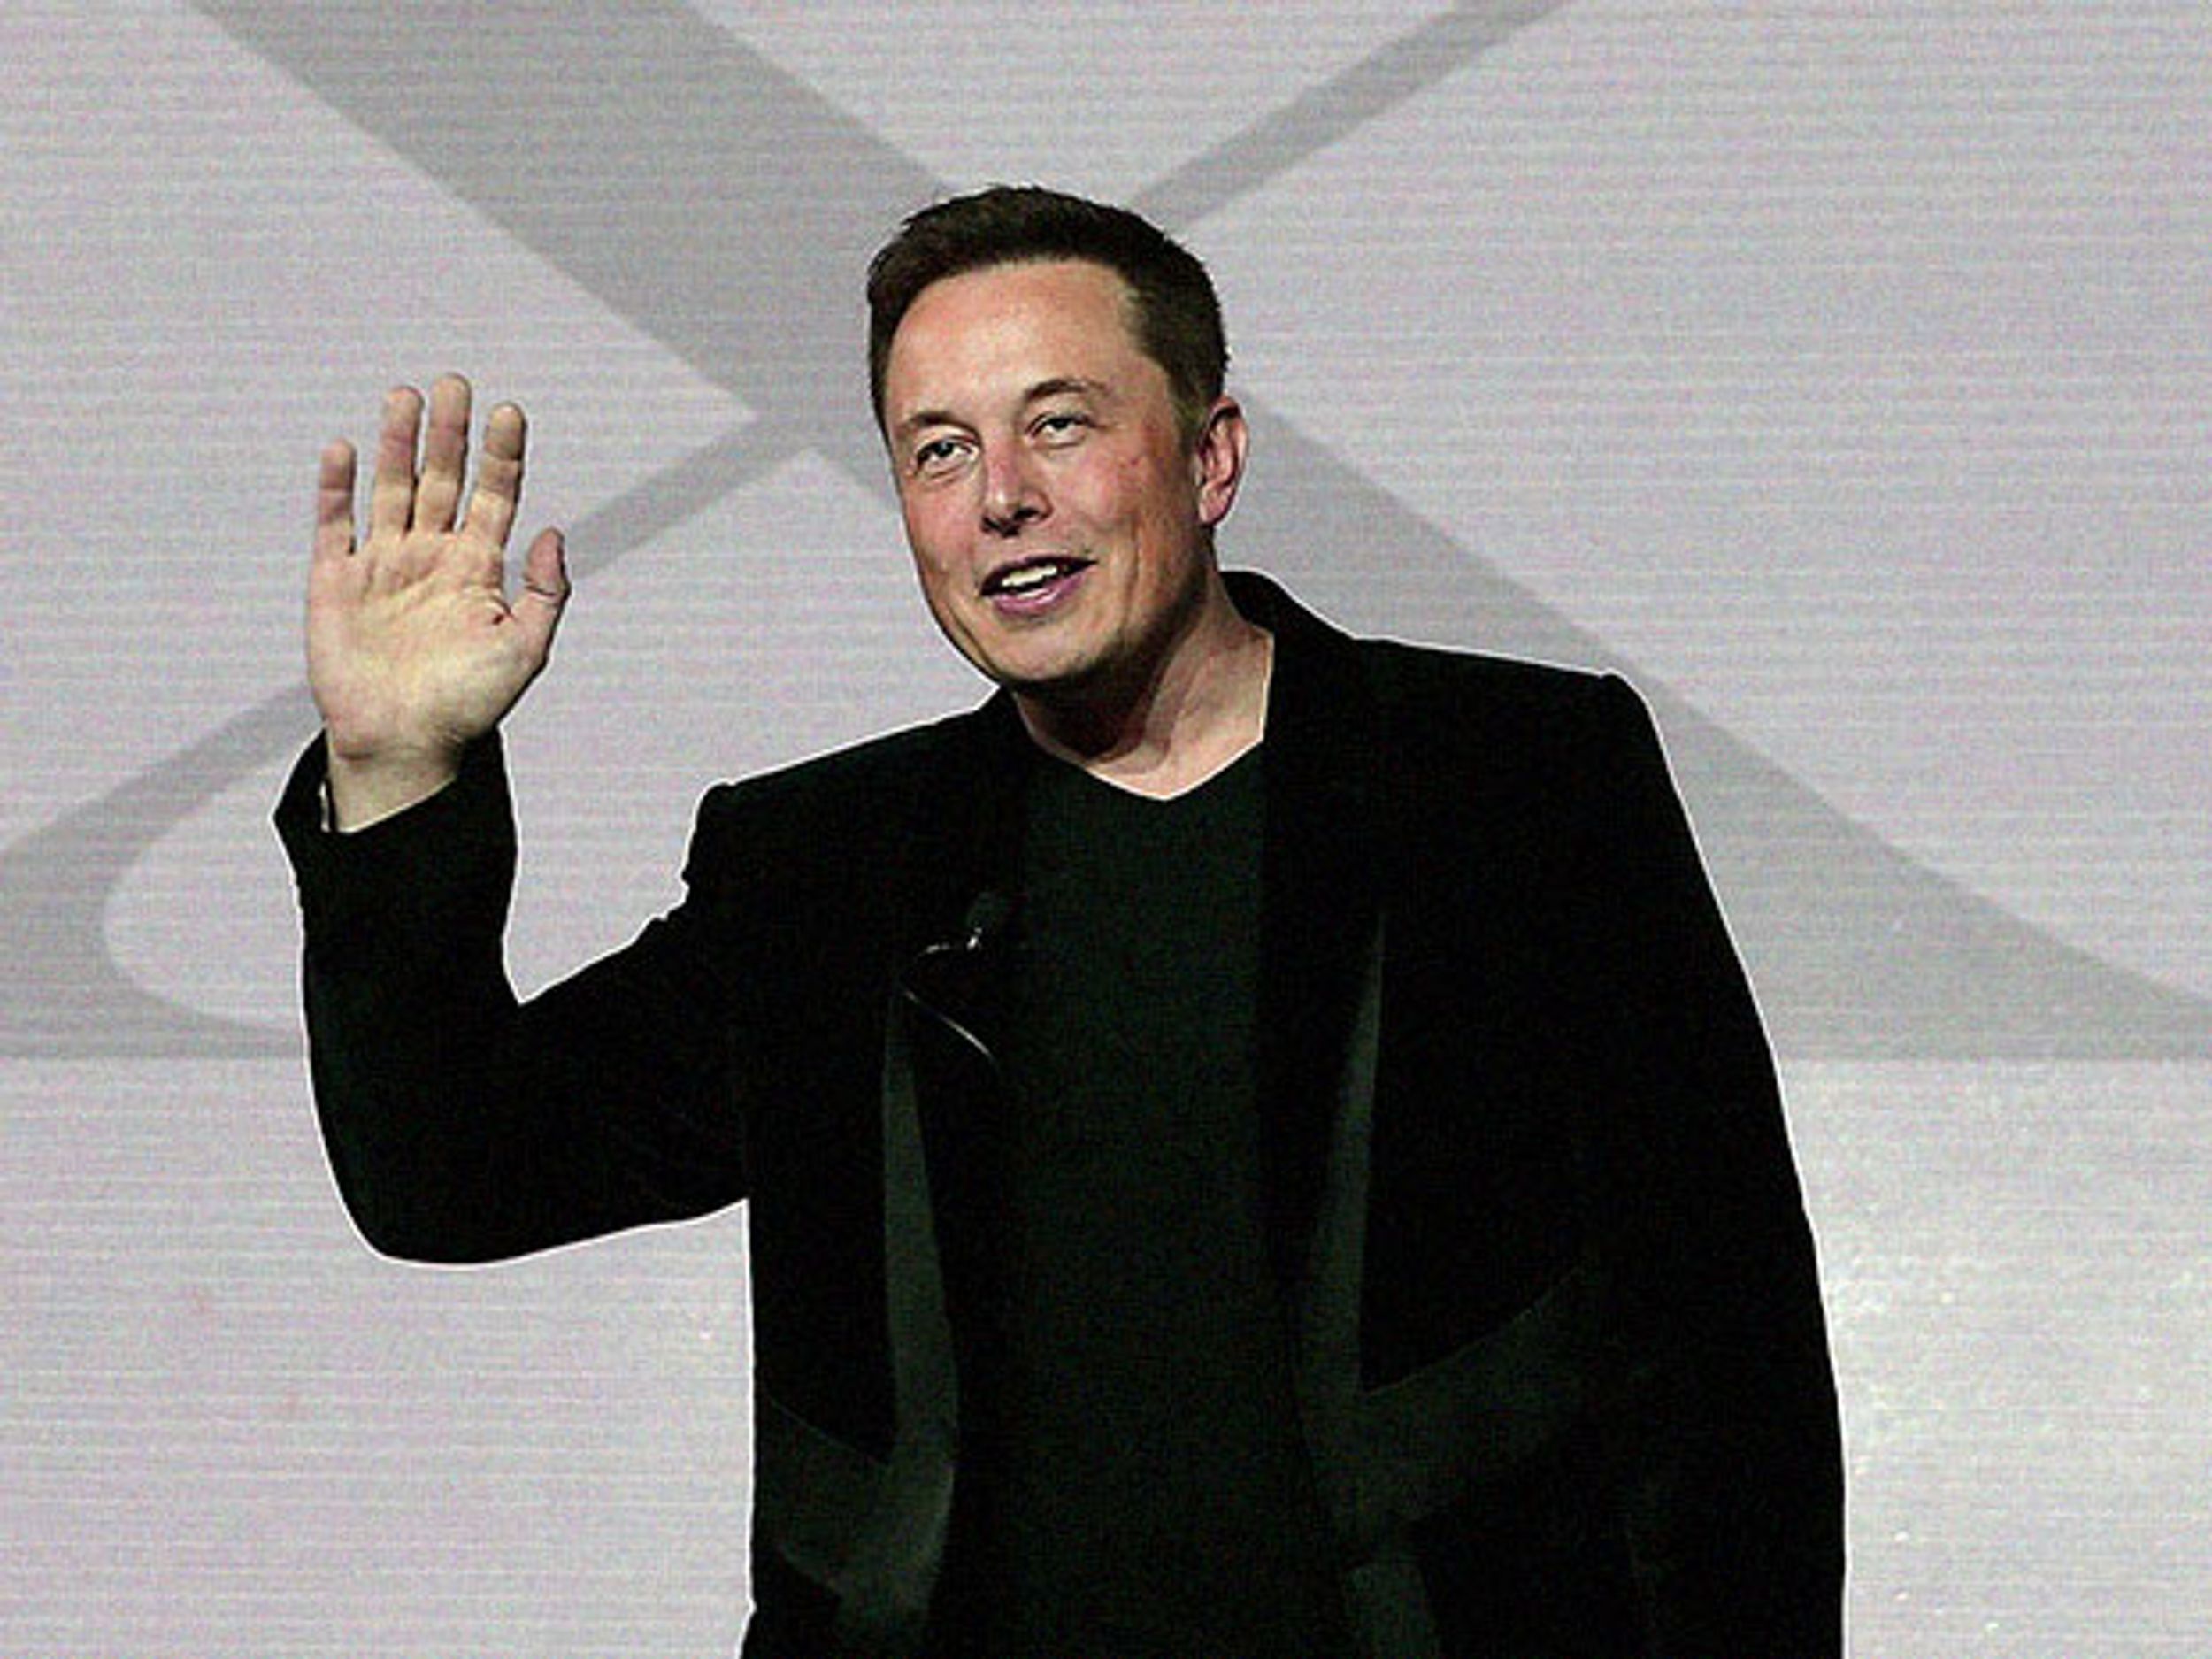 Elon Musk waving good-bye